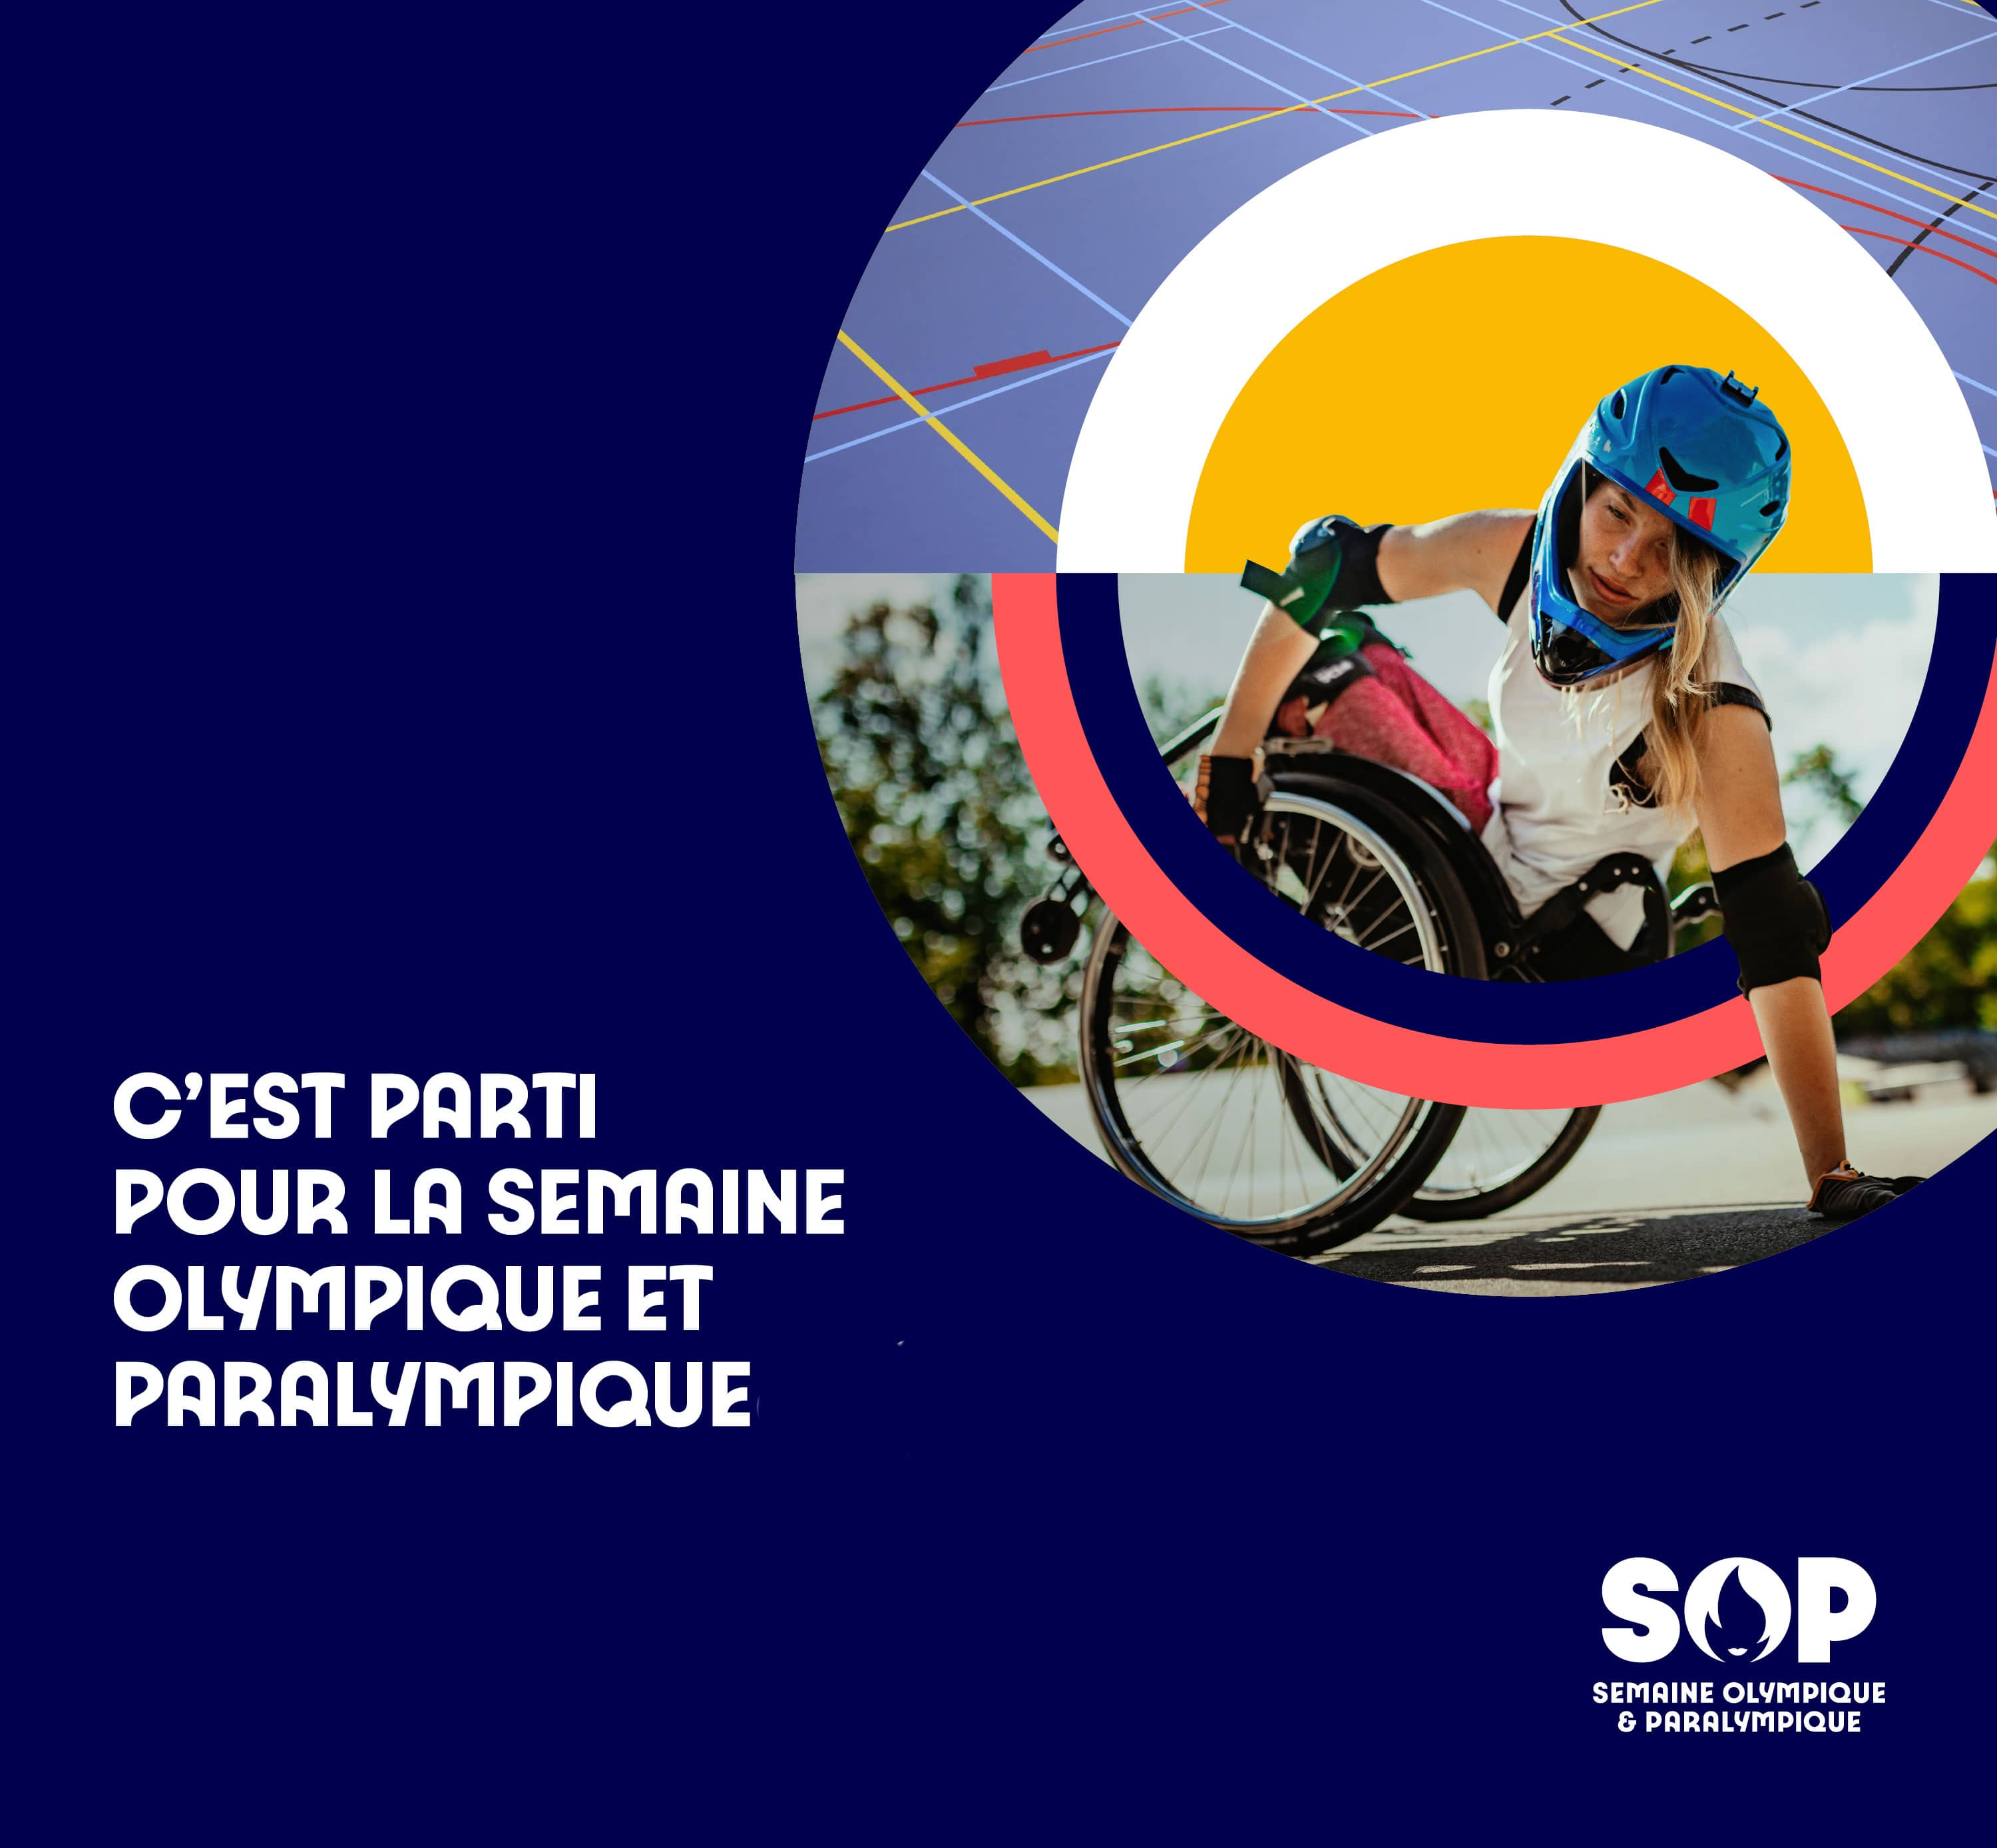 Semaine Olympique et Paralympique - paris 2024